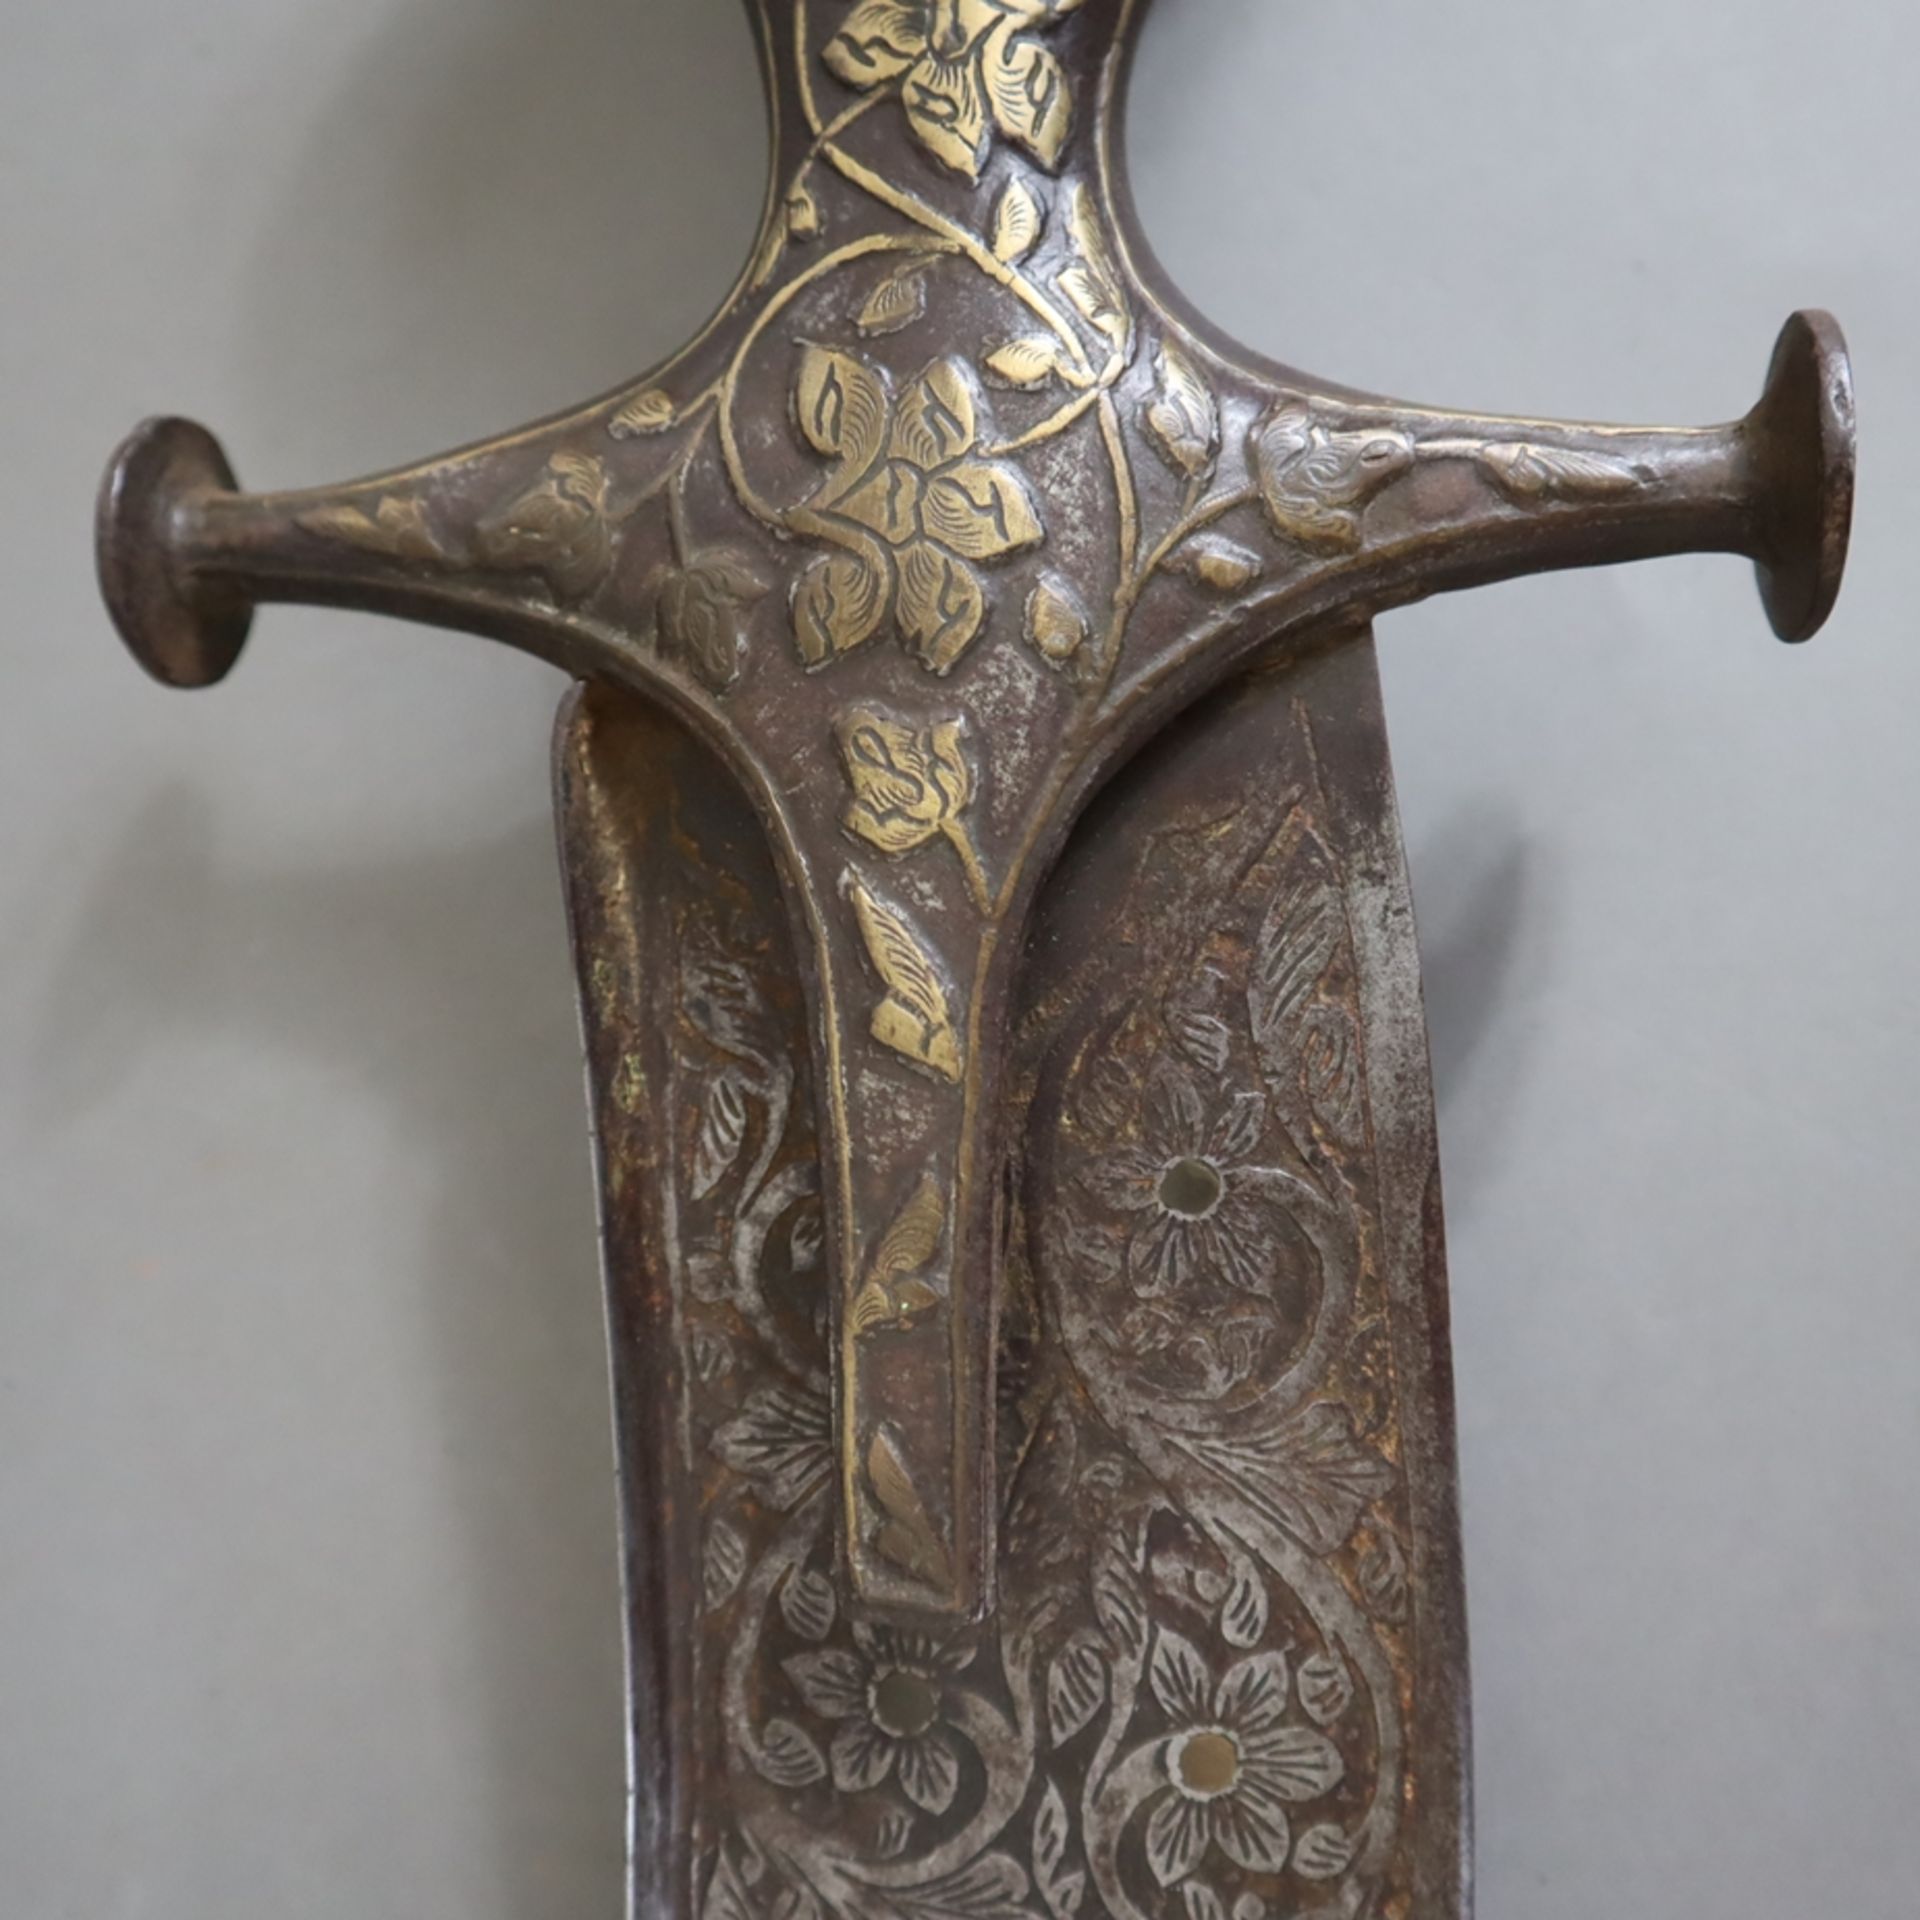 Tegha-Schwert - Mogul-Indien, 18./19. Jh., Eisen und vergoldete/tauschierte Bronze, breite und schw - Image 3 of 15